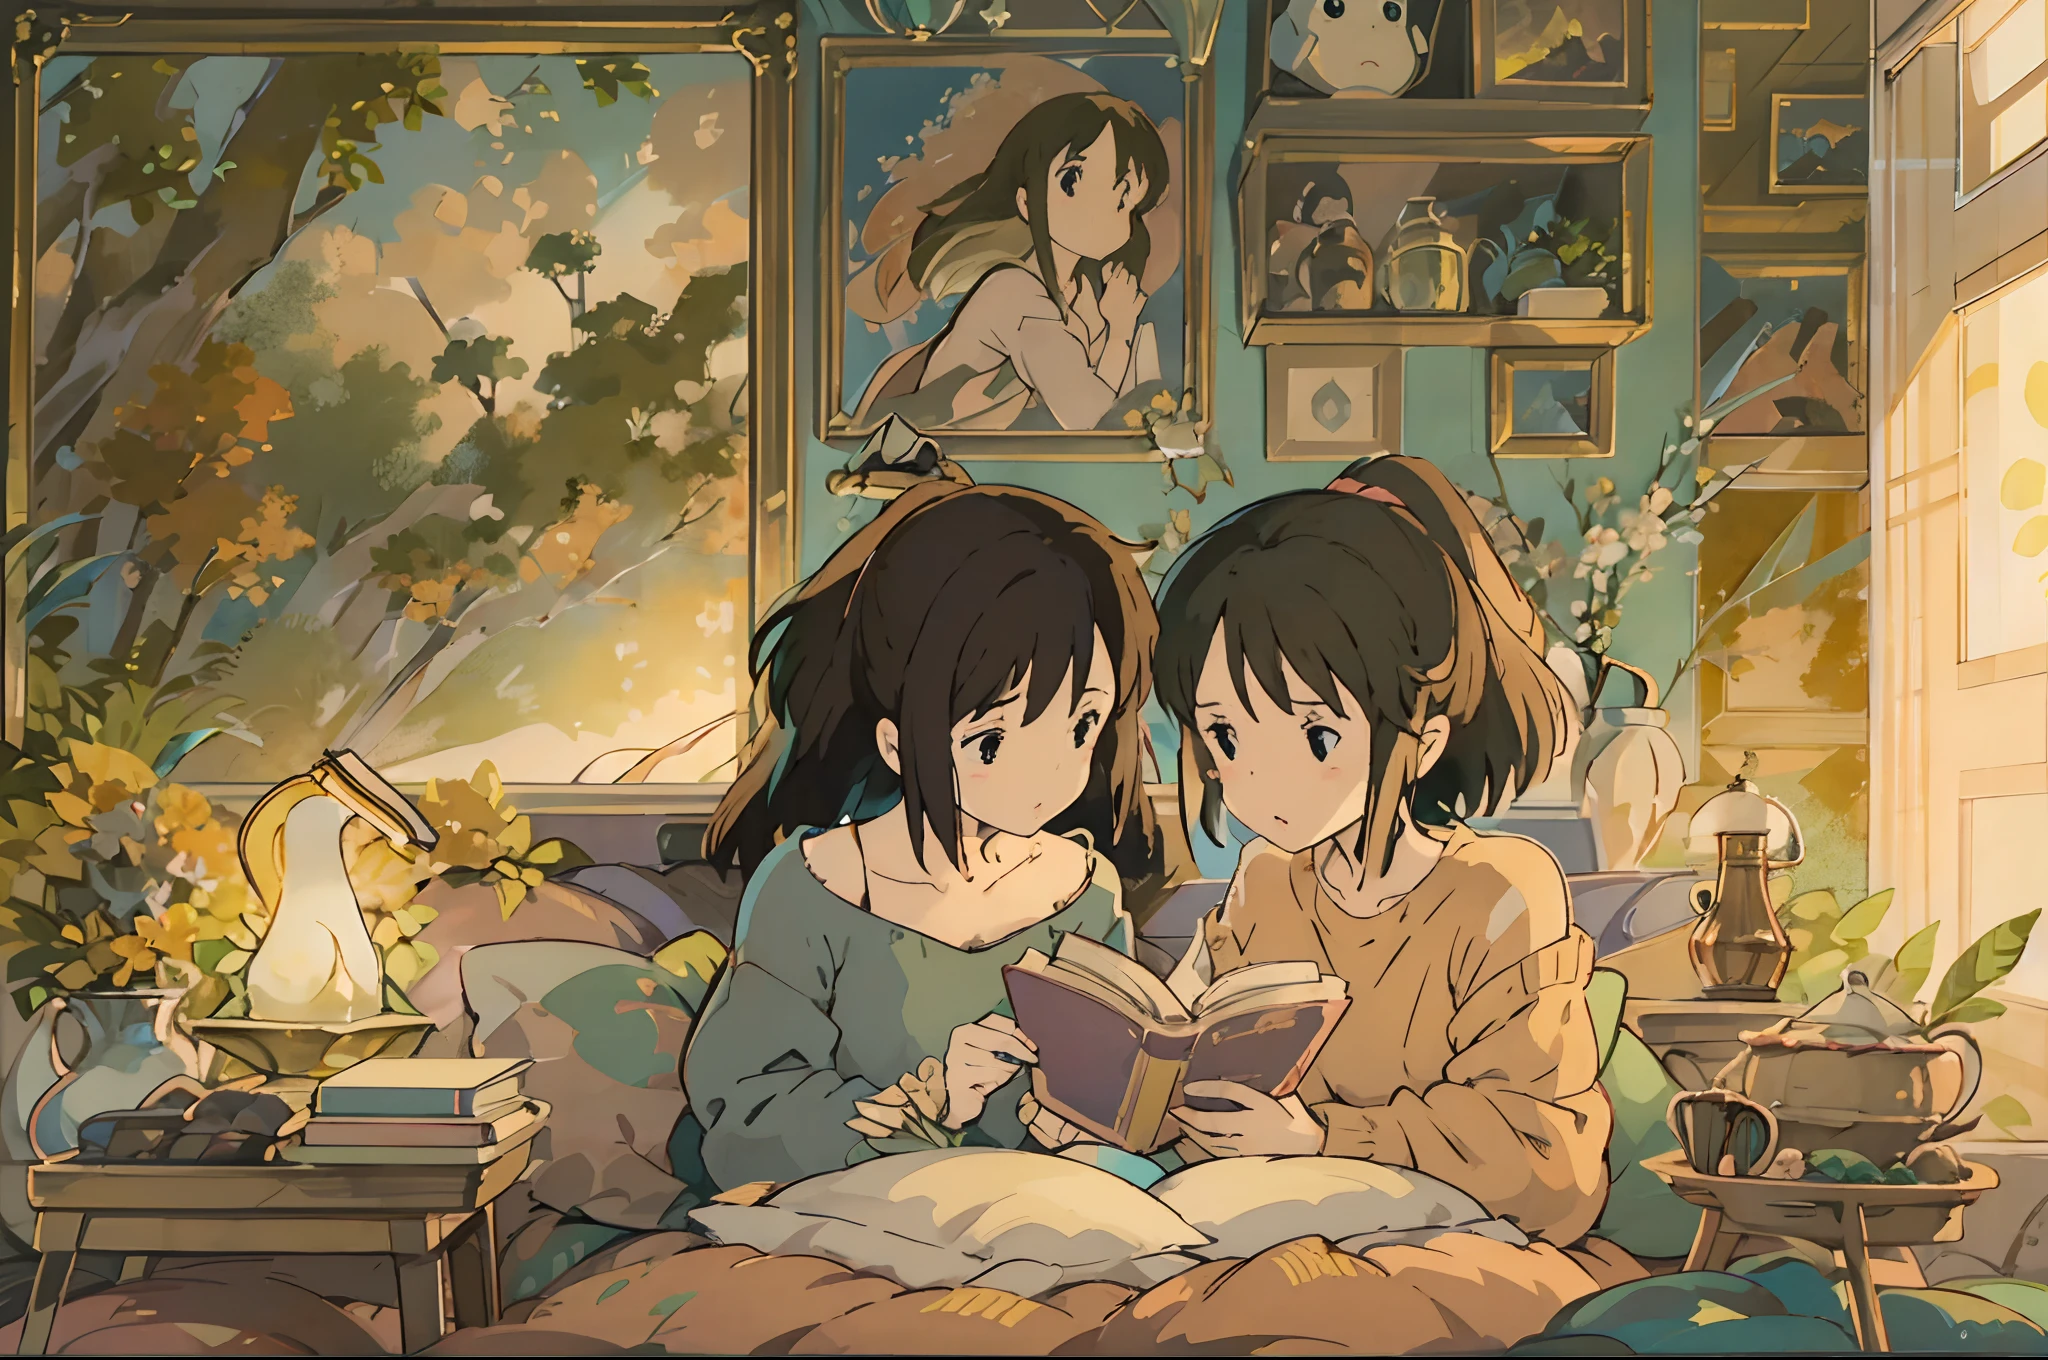 Une illustration numérique de 2 filles entièrement absorbées par la lecture sur un lit confortable, inspiré du style de Hayao Miyazaki. L&#39;œuvre d&#39;art doit être remplie de détails enchanteurs et captivants, dégageant une touche de fantaisie. Les filles devraient être belles, des yeux captivants et minutieusement détaillés, ainsi que des lèvres merveilleusement délicates. La scène doit être visuellement attrayante, offrant un environnement chaleureux et accueillant. L&#39;illustration doit être créée en utilisant différents supports, comme l&#39;illustration numérique, pour améliorer l&#39;effet visuel global. L&#39;attention portée aux détails doit être remarquable, s&#39;assurer que chaque élément est représenté avec la plus grande précision. L&#39;image doit posséder une qualité extrêmement élevée, avec une résolution de 4k ou 8k, et être un chef-d&#39;œuvre à part entière. Le style de l&#39;œuvre d&#39;art doit capturer l&#39;essence des œuvres renommées de Hayao Miyazaki., présentant un mélange unique d&#39;imagination, narration, et des visuels vibrants. Les couleurs utilisées doivent être chaleureuses et invitantes, créer une atmosphère apaisante et cosy. L&#39;éclairage doit être habilement rendu, éclairer la scène de manière douce et douce. Dans l&#39;ensemble, l&#39;illustration doit transporter les spectateurs dans un monde d&#39;émerveillement et de magie, où ils peuvent s&#39;immerger pleinement dans la joie de lire. La combinaison du style emblématique de Miyazaki, détails enchanteurs, tons chauds, et un soupçon de fantaisie doit être réuni pour créer une œuvre d&#39;art impressionnante et captivante..